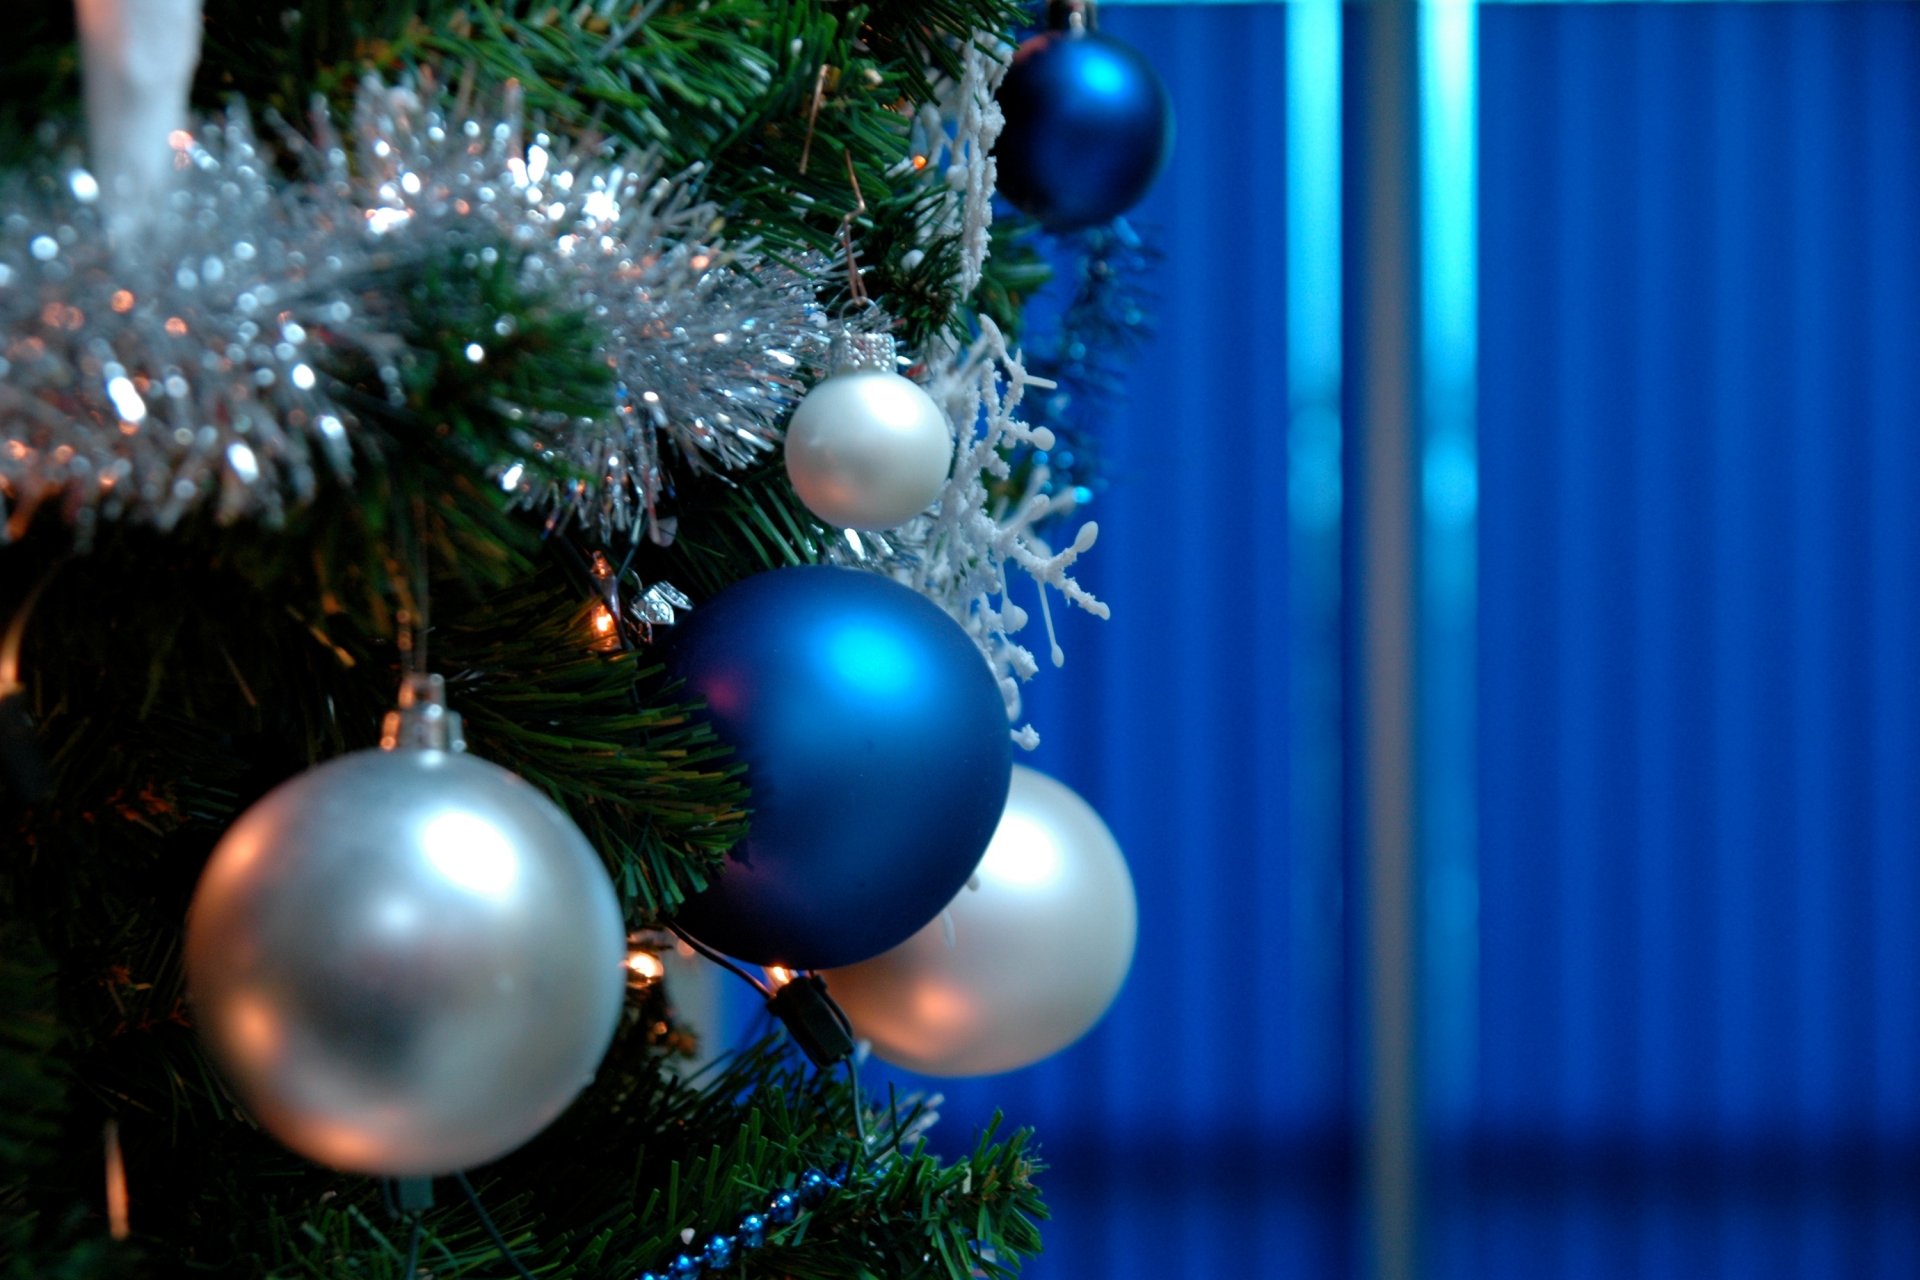 urlaub neujahr weihnachten weihnachtsschmuck spielzeug ballon tanne weihnachtsbaum hintergrund tapete widescreen vollbild widescreen widescreen